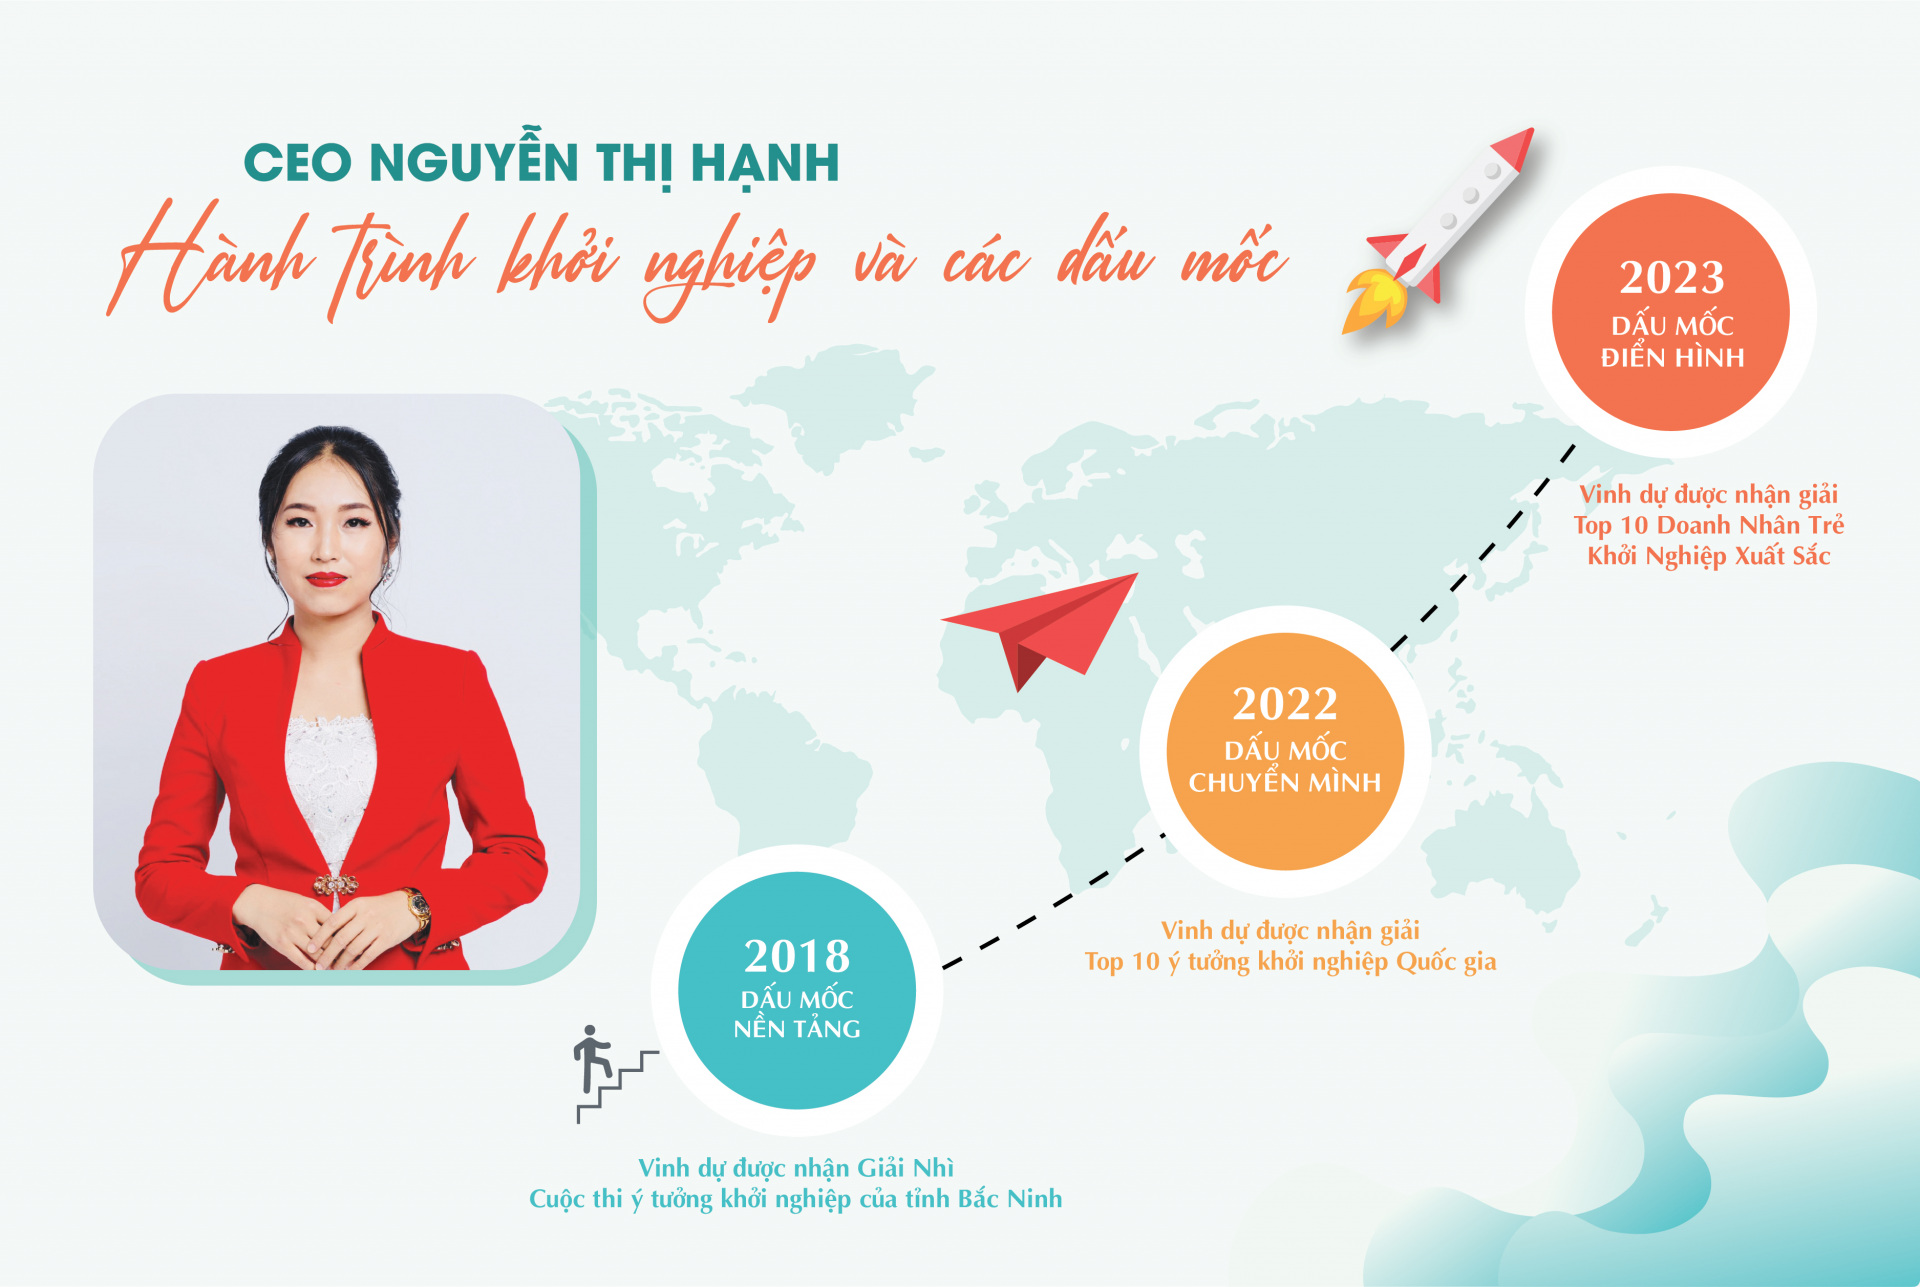 Hành trình khởi nghiệp của CEO Nguyễn Thị Hạnh